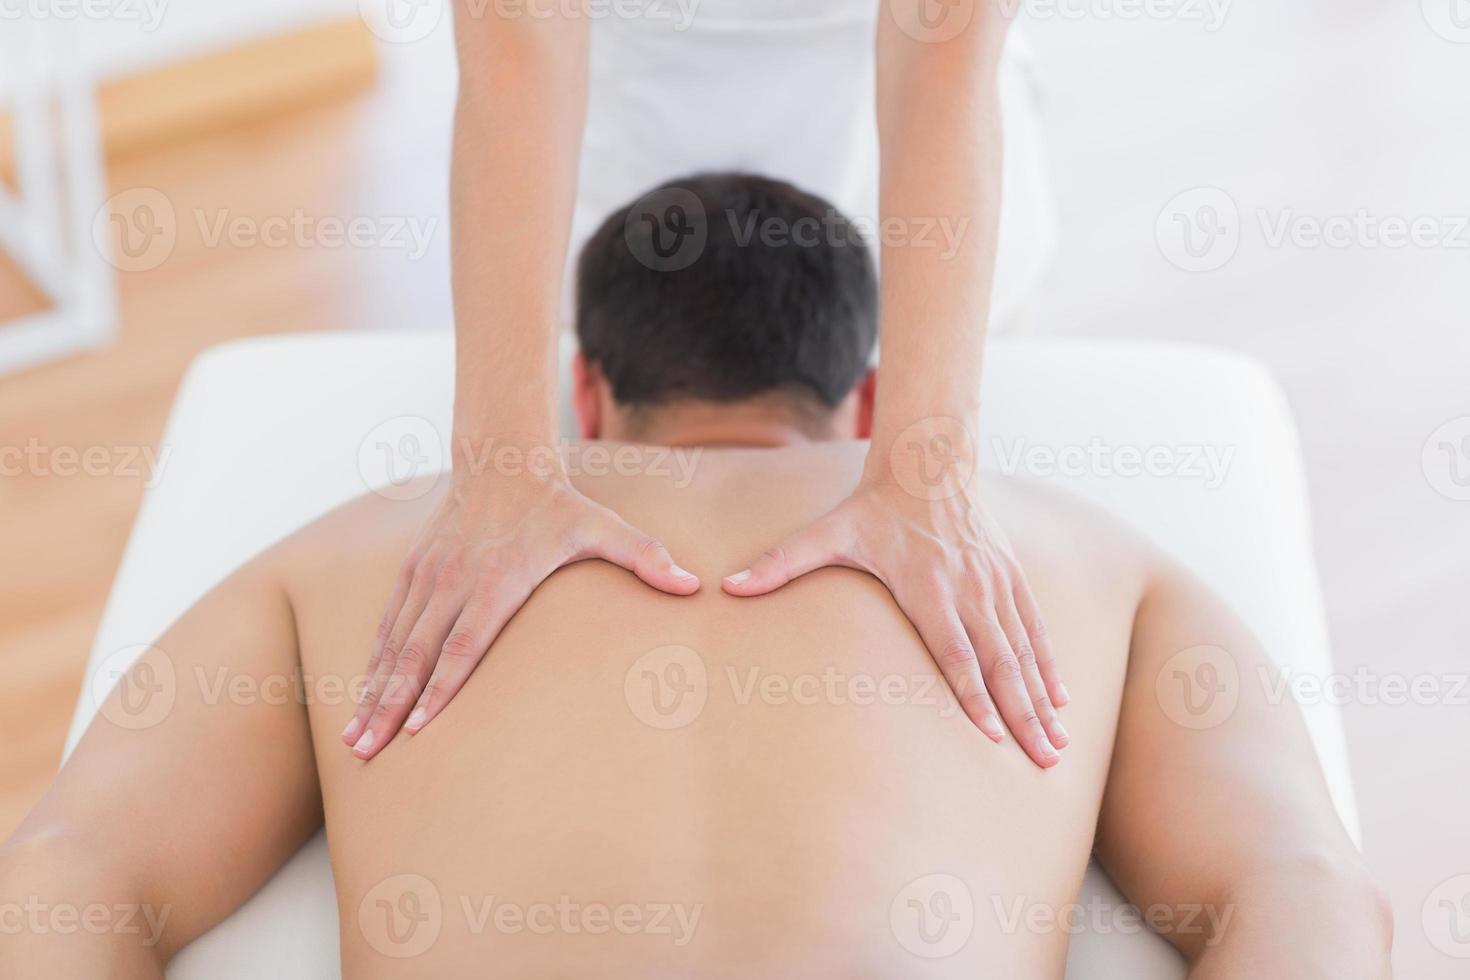 fysioterapeut som gör ryggmassage till sin patient foto